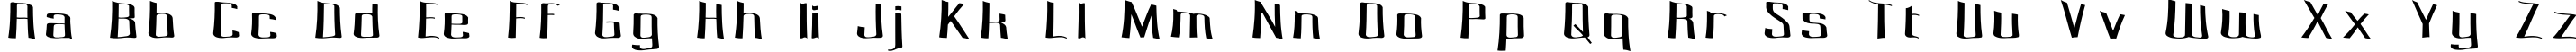 Пример написания английского алфавита шрифтом Pecot Spacewarp